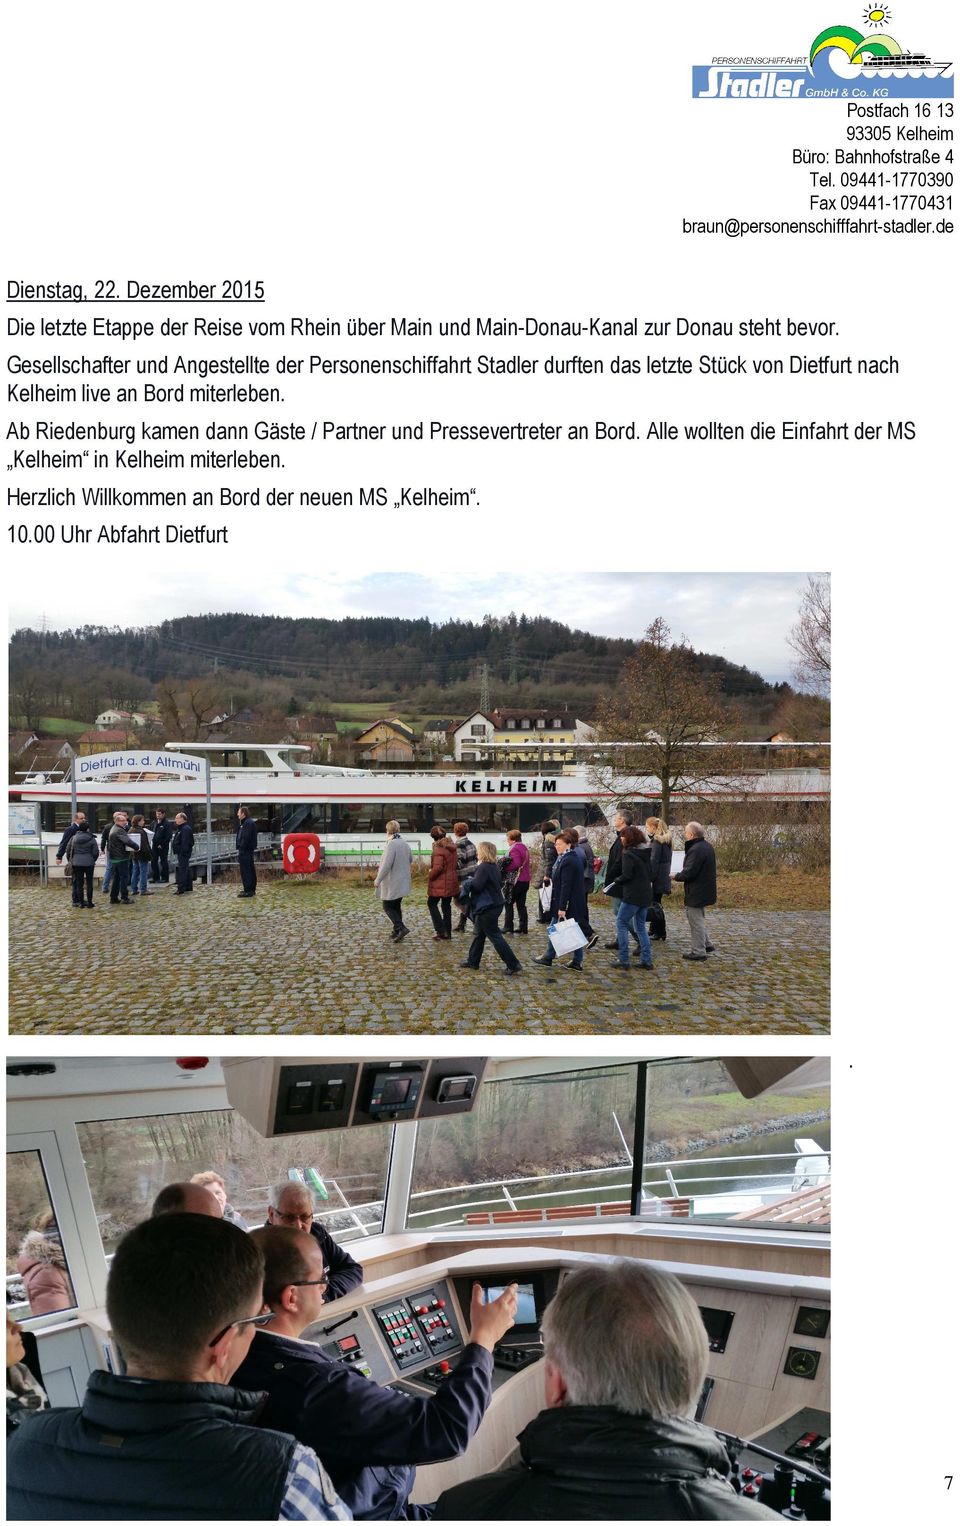 Gesellschafter und Angestellte der Personenschiffahrt Stadler durften das letzte Stück von Dietfurt nach Kelheim live